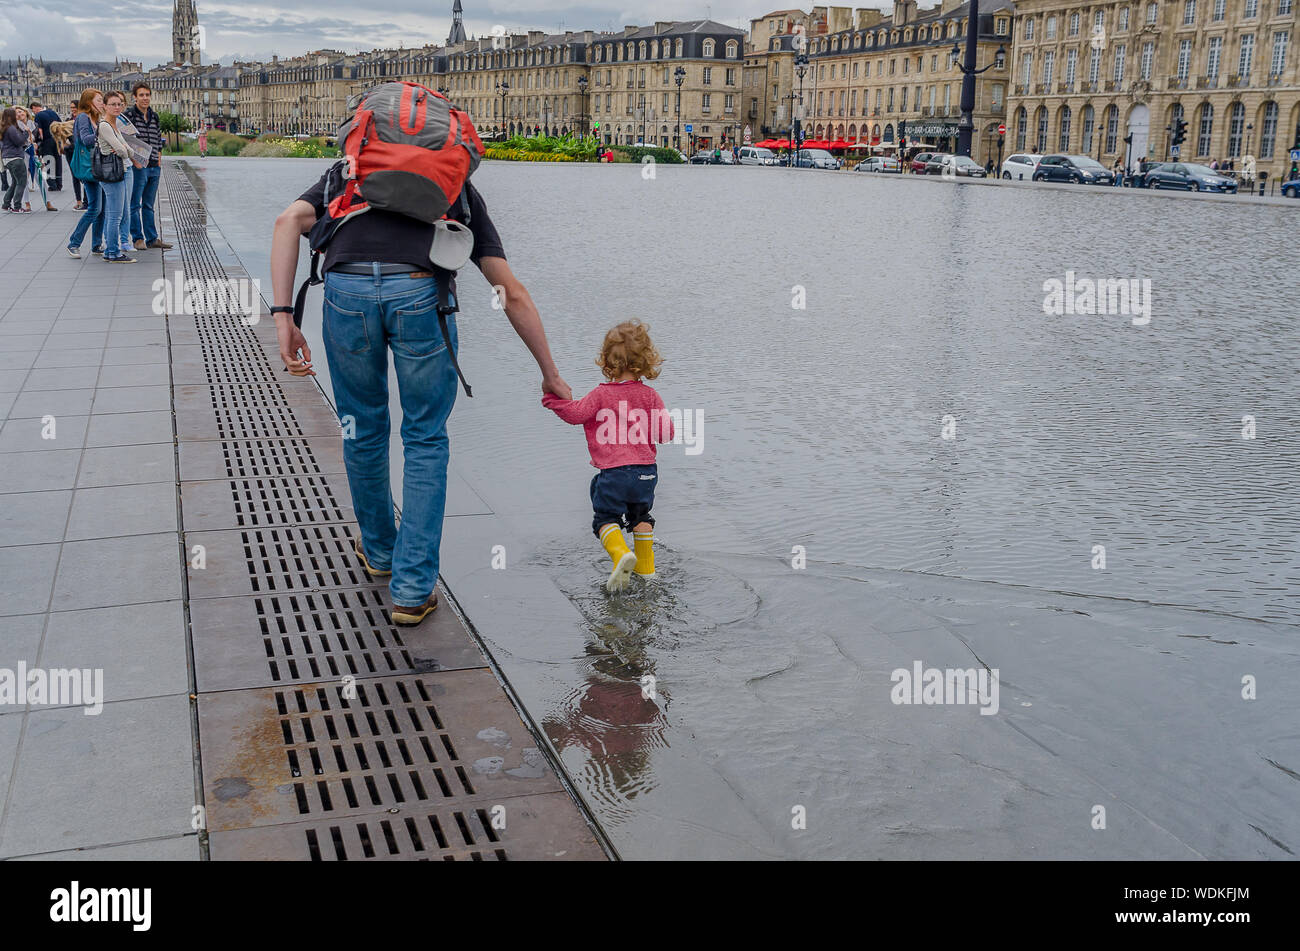 Vater und Tochter im Wasser spielen Spiegel der Place de la Bourse in Bordeaux. September 2013. Frankreich Stockfoto